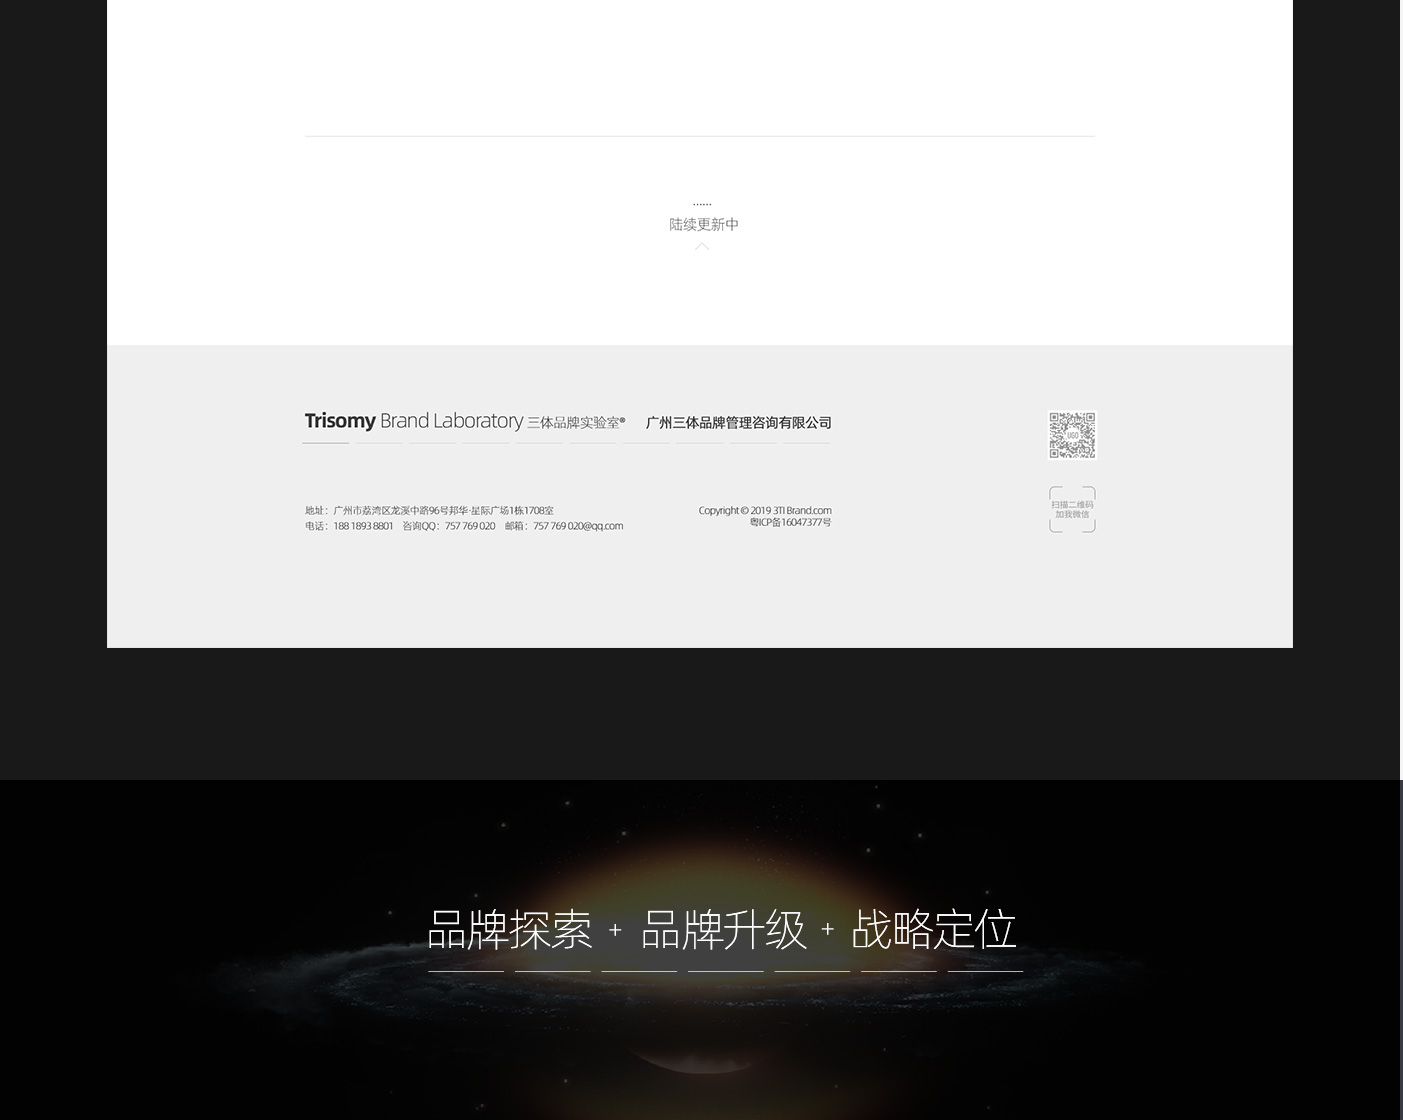 深圳品牌网站设计